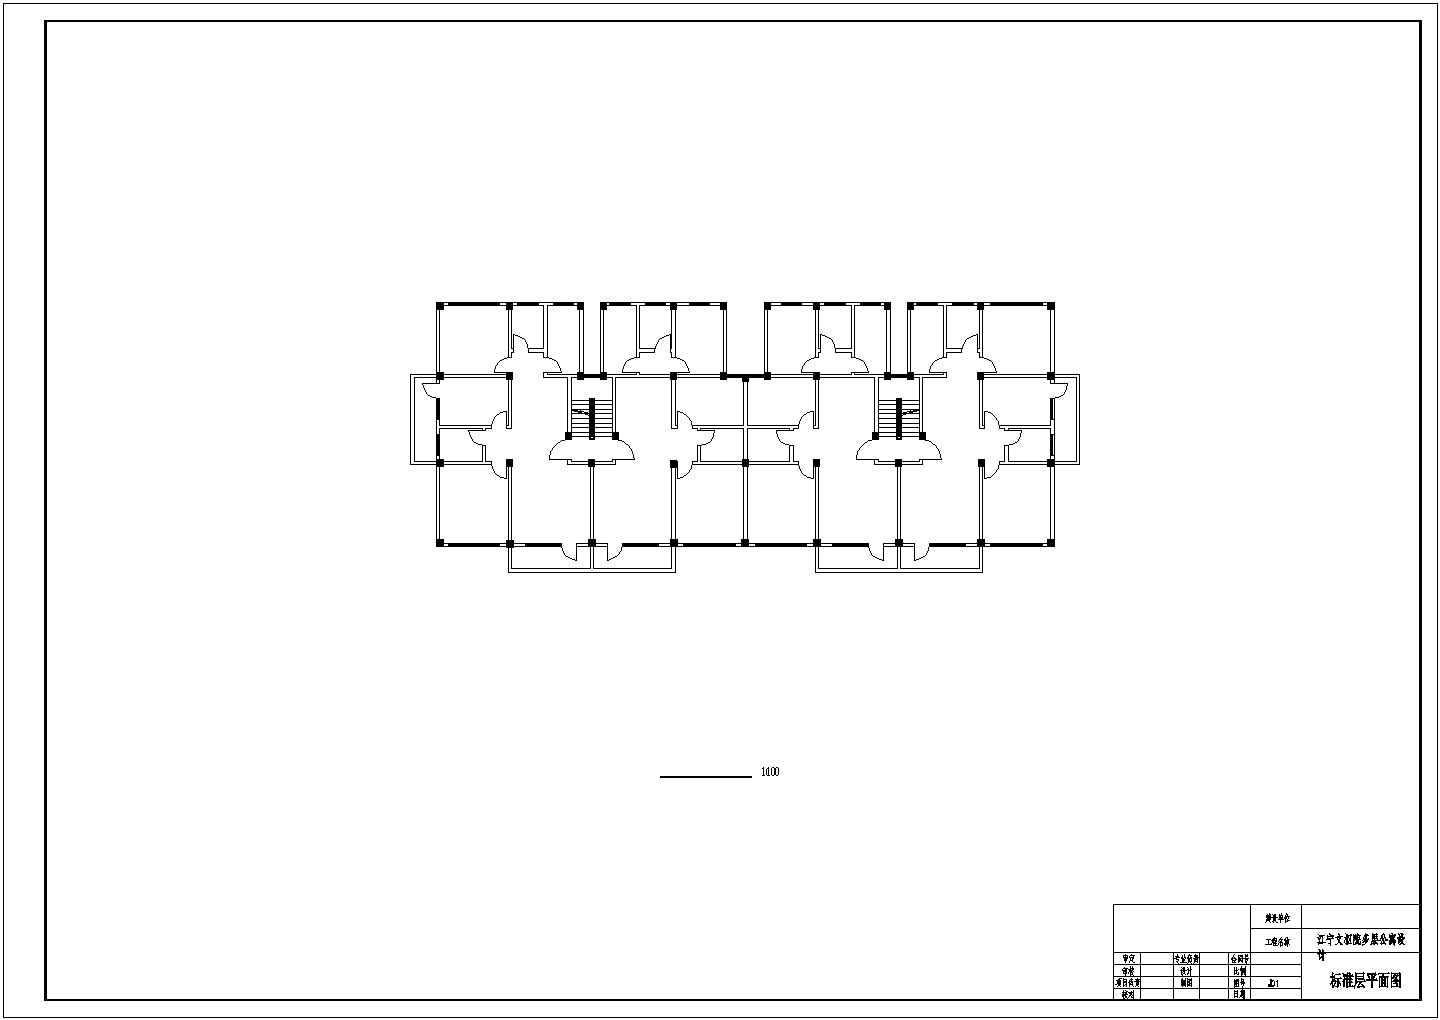 昆山市某学校2500平米六层框混结构学生宿舍楼全套平立剖面设计CAD图纸